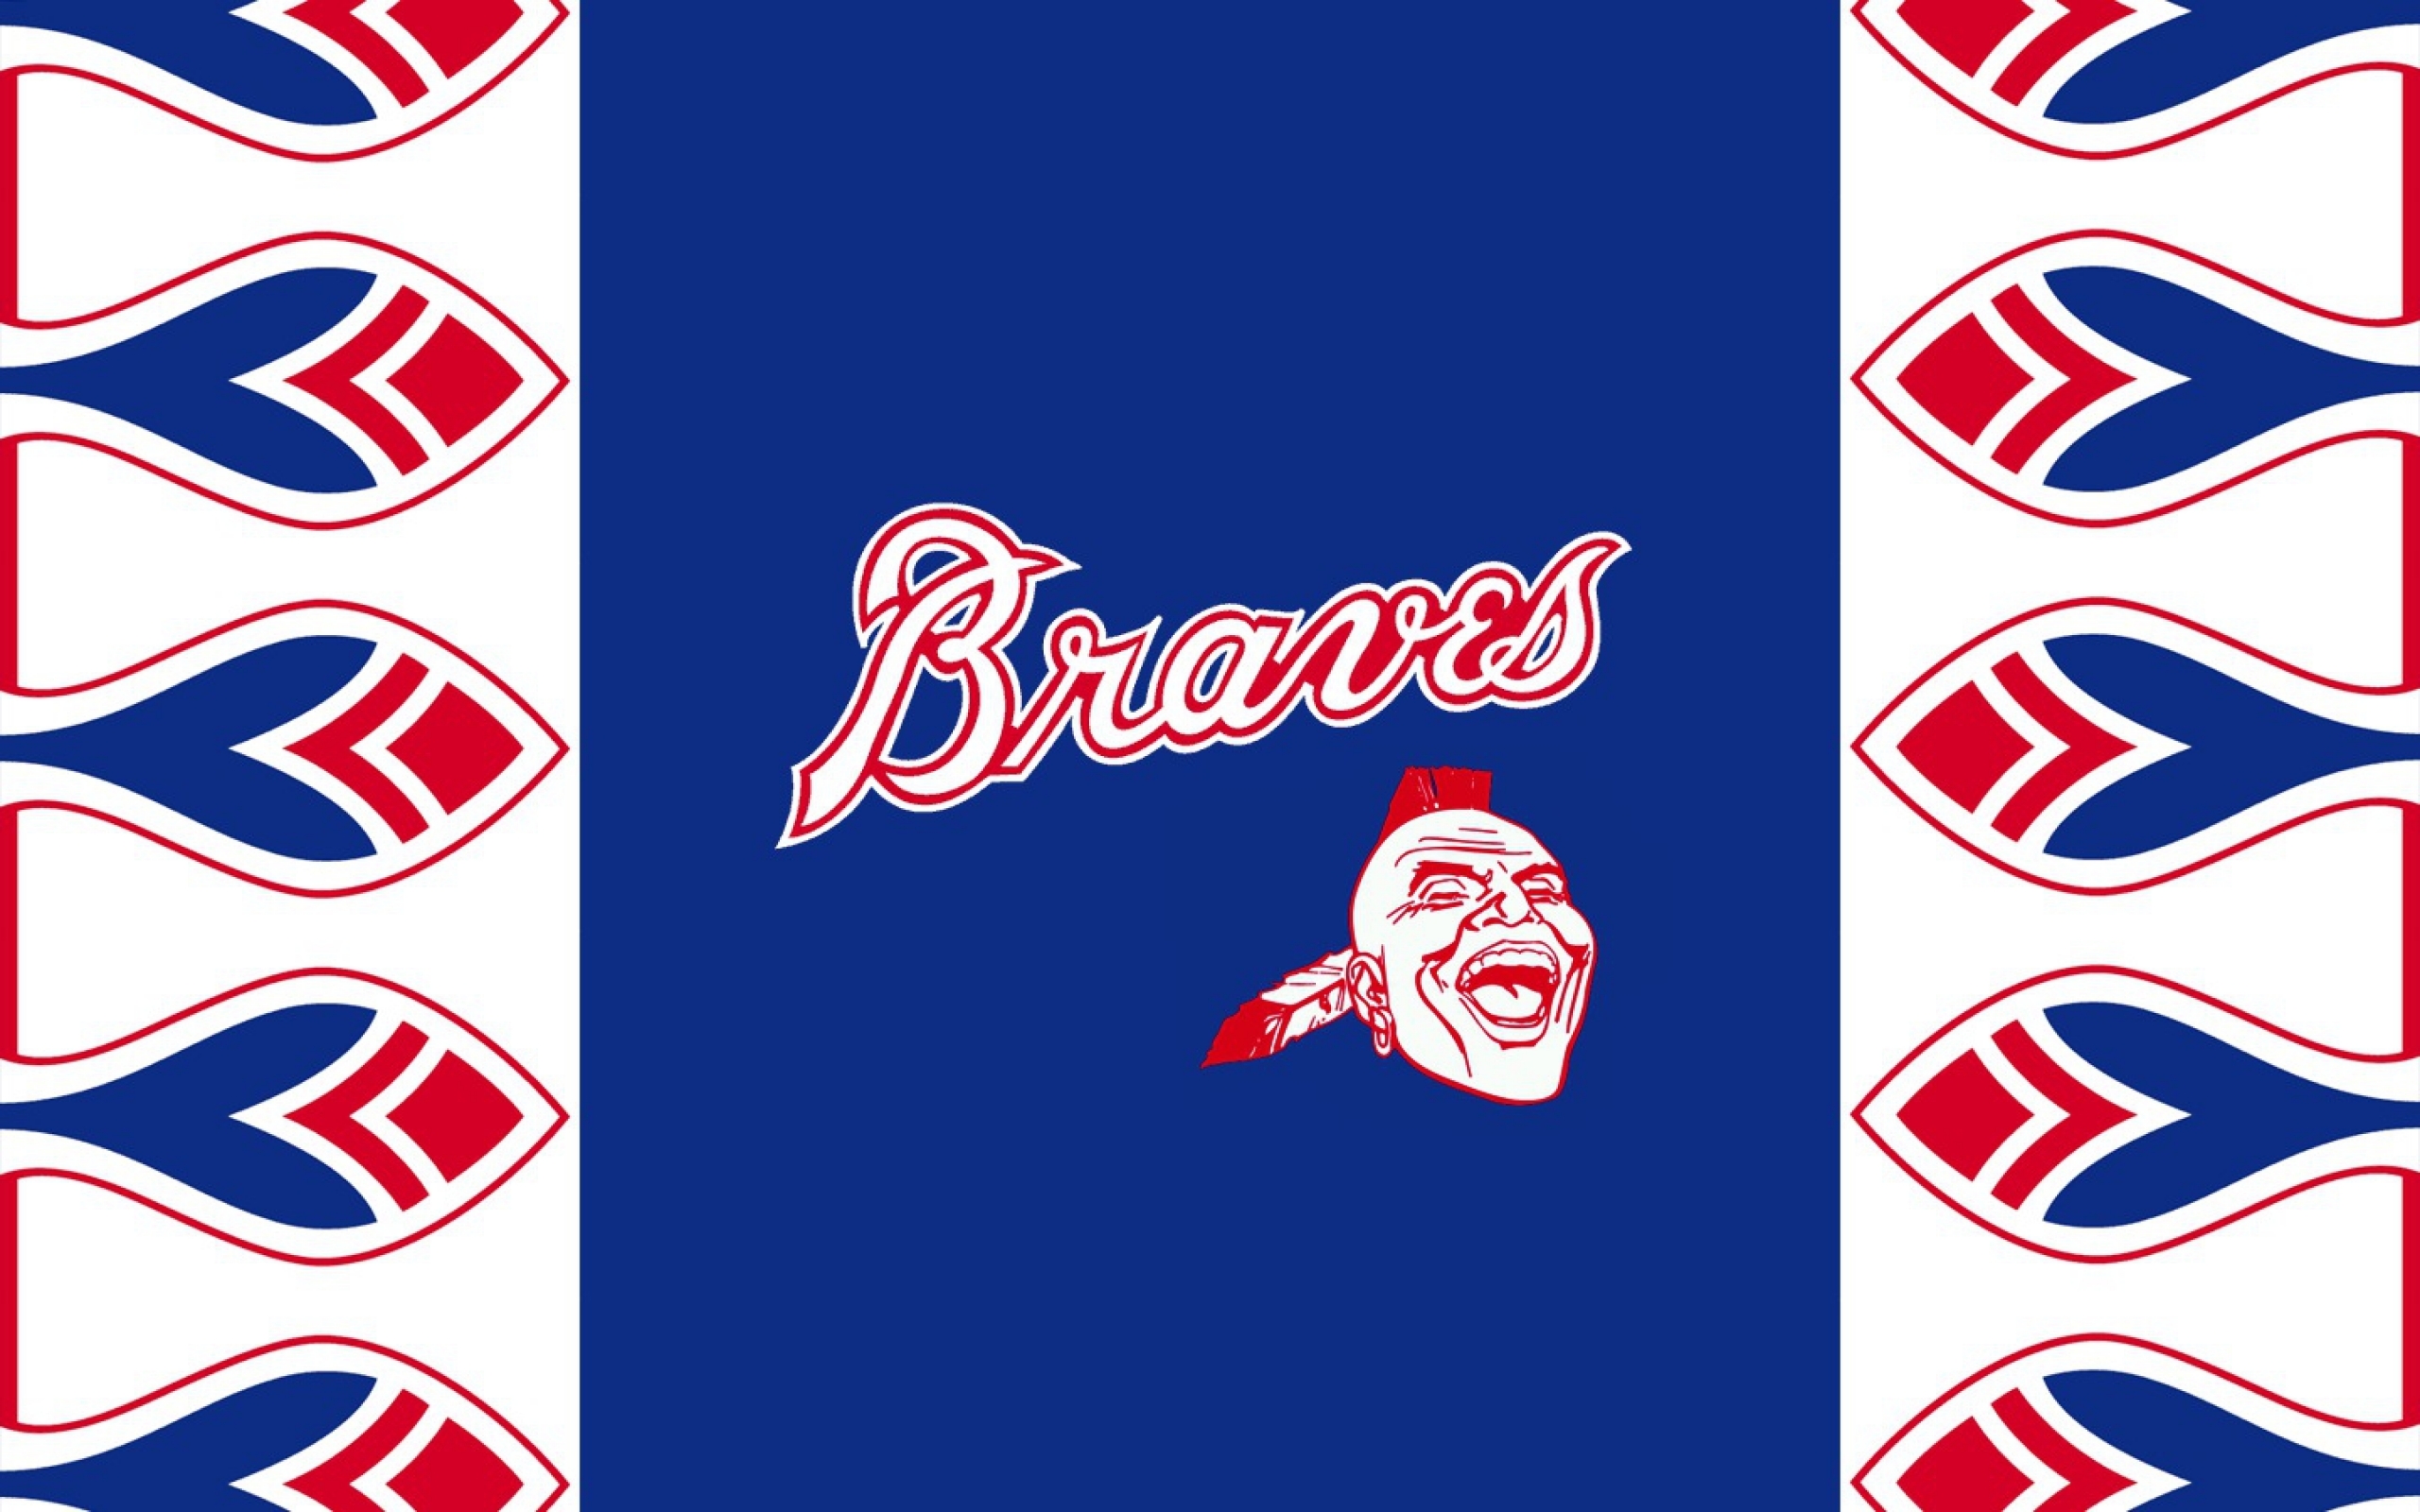 Wallpaper wallpaper sport logo baseball glitter checkered MLB  Atlanta Braves images for desktop section спорт  download